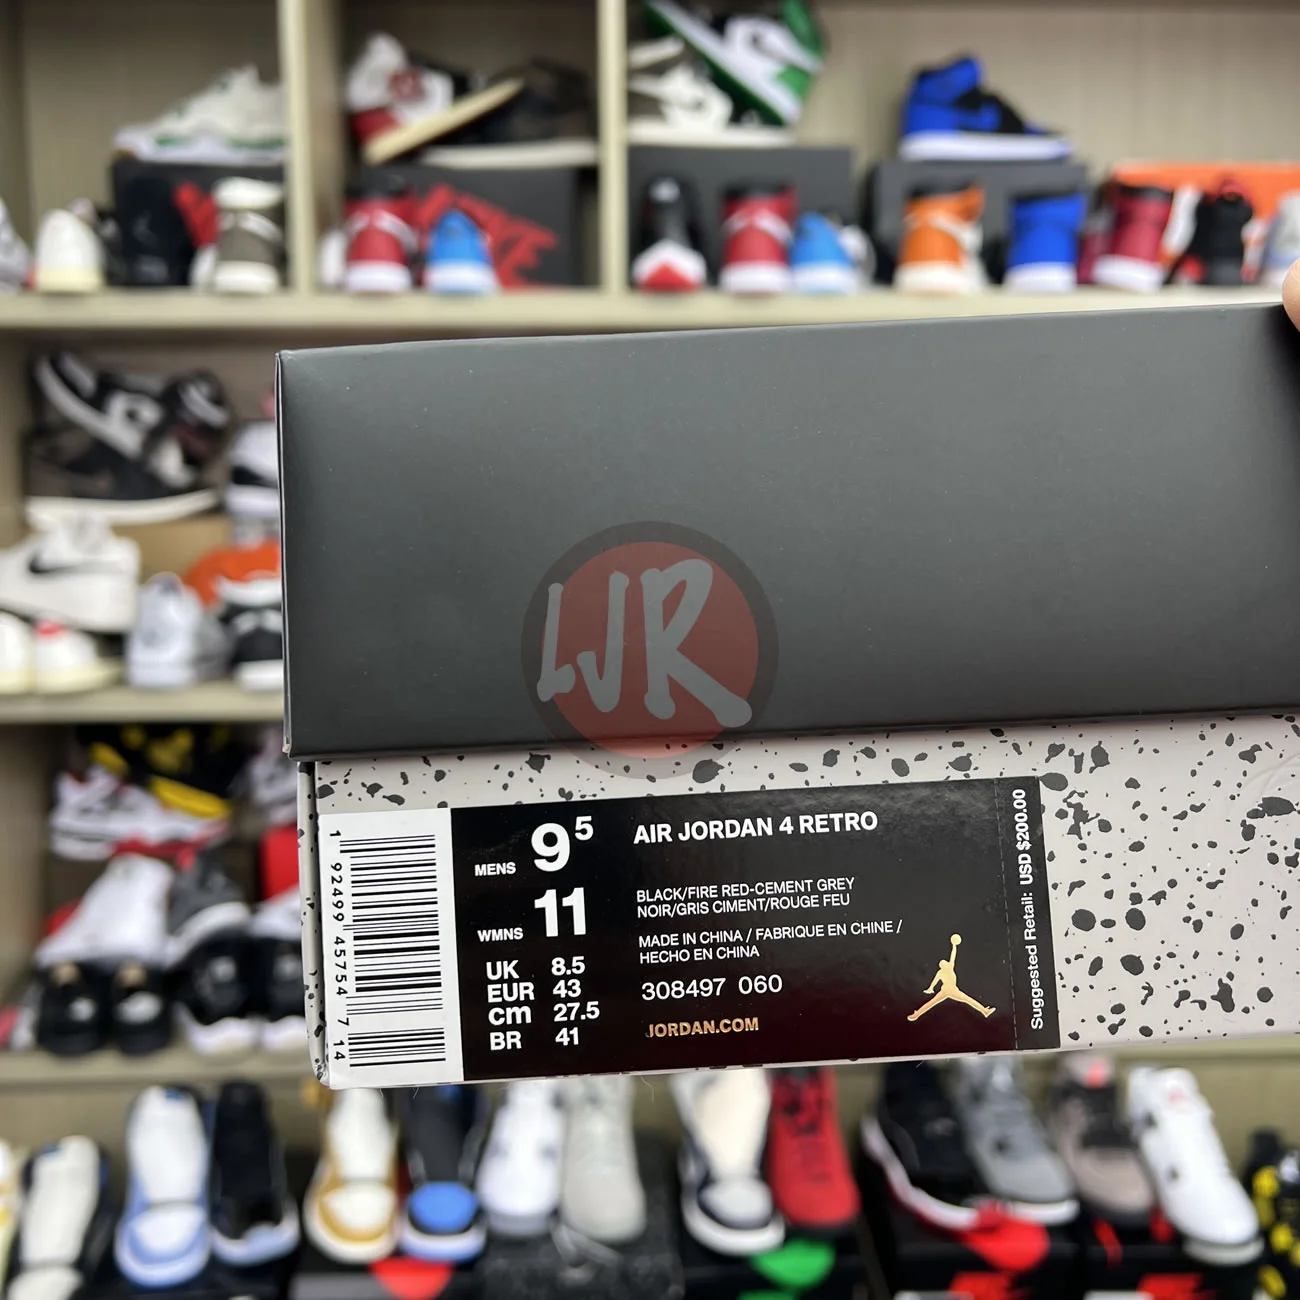 Air Jordan 4 Retro Bred 2019 308497 060 Ljr Sneakers (11) - bc-ljr.net